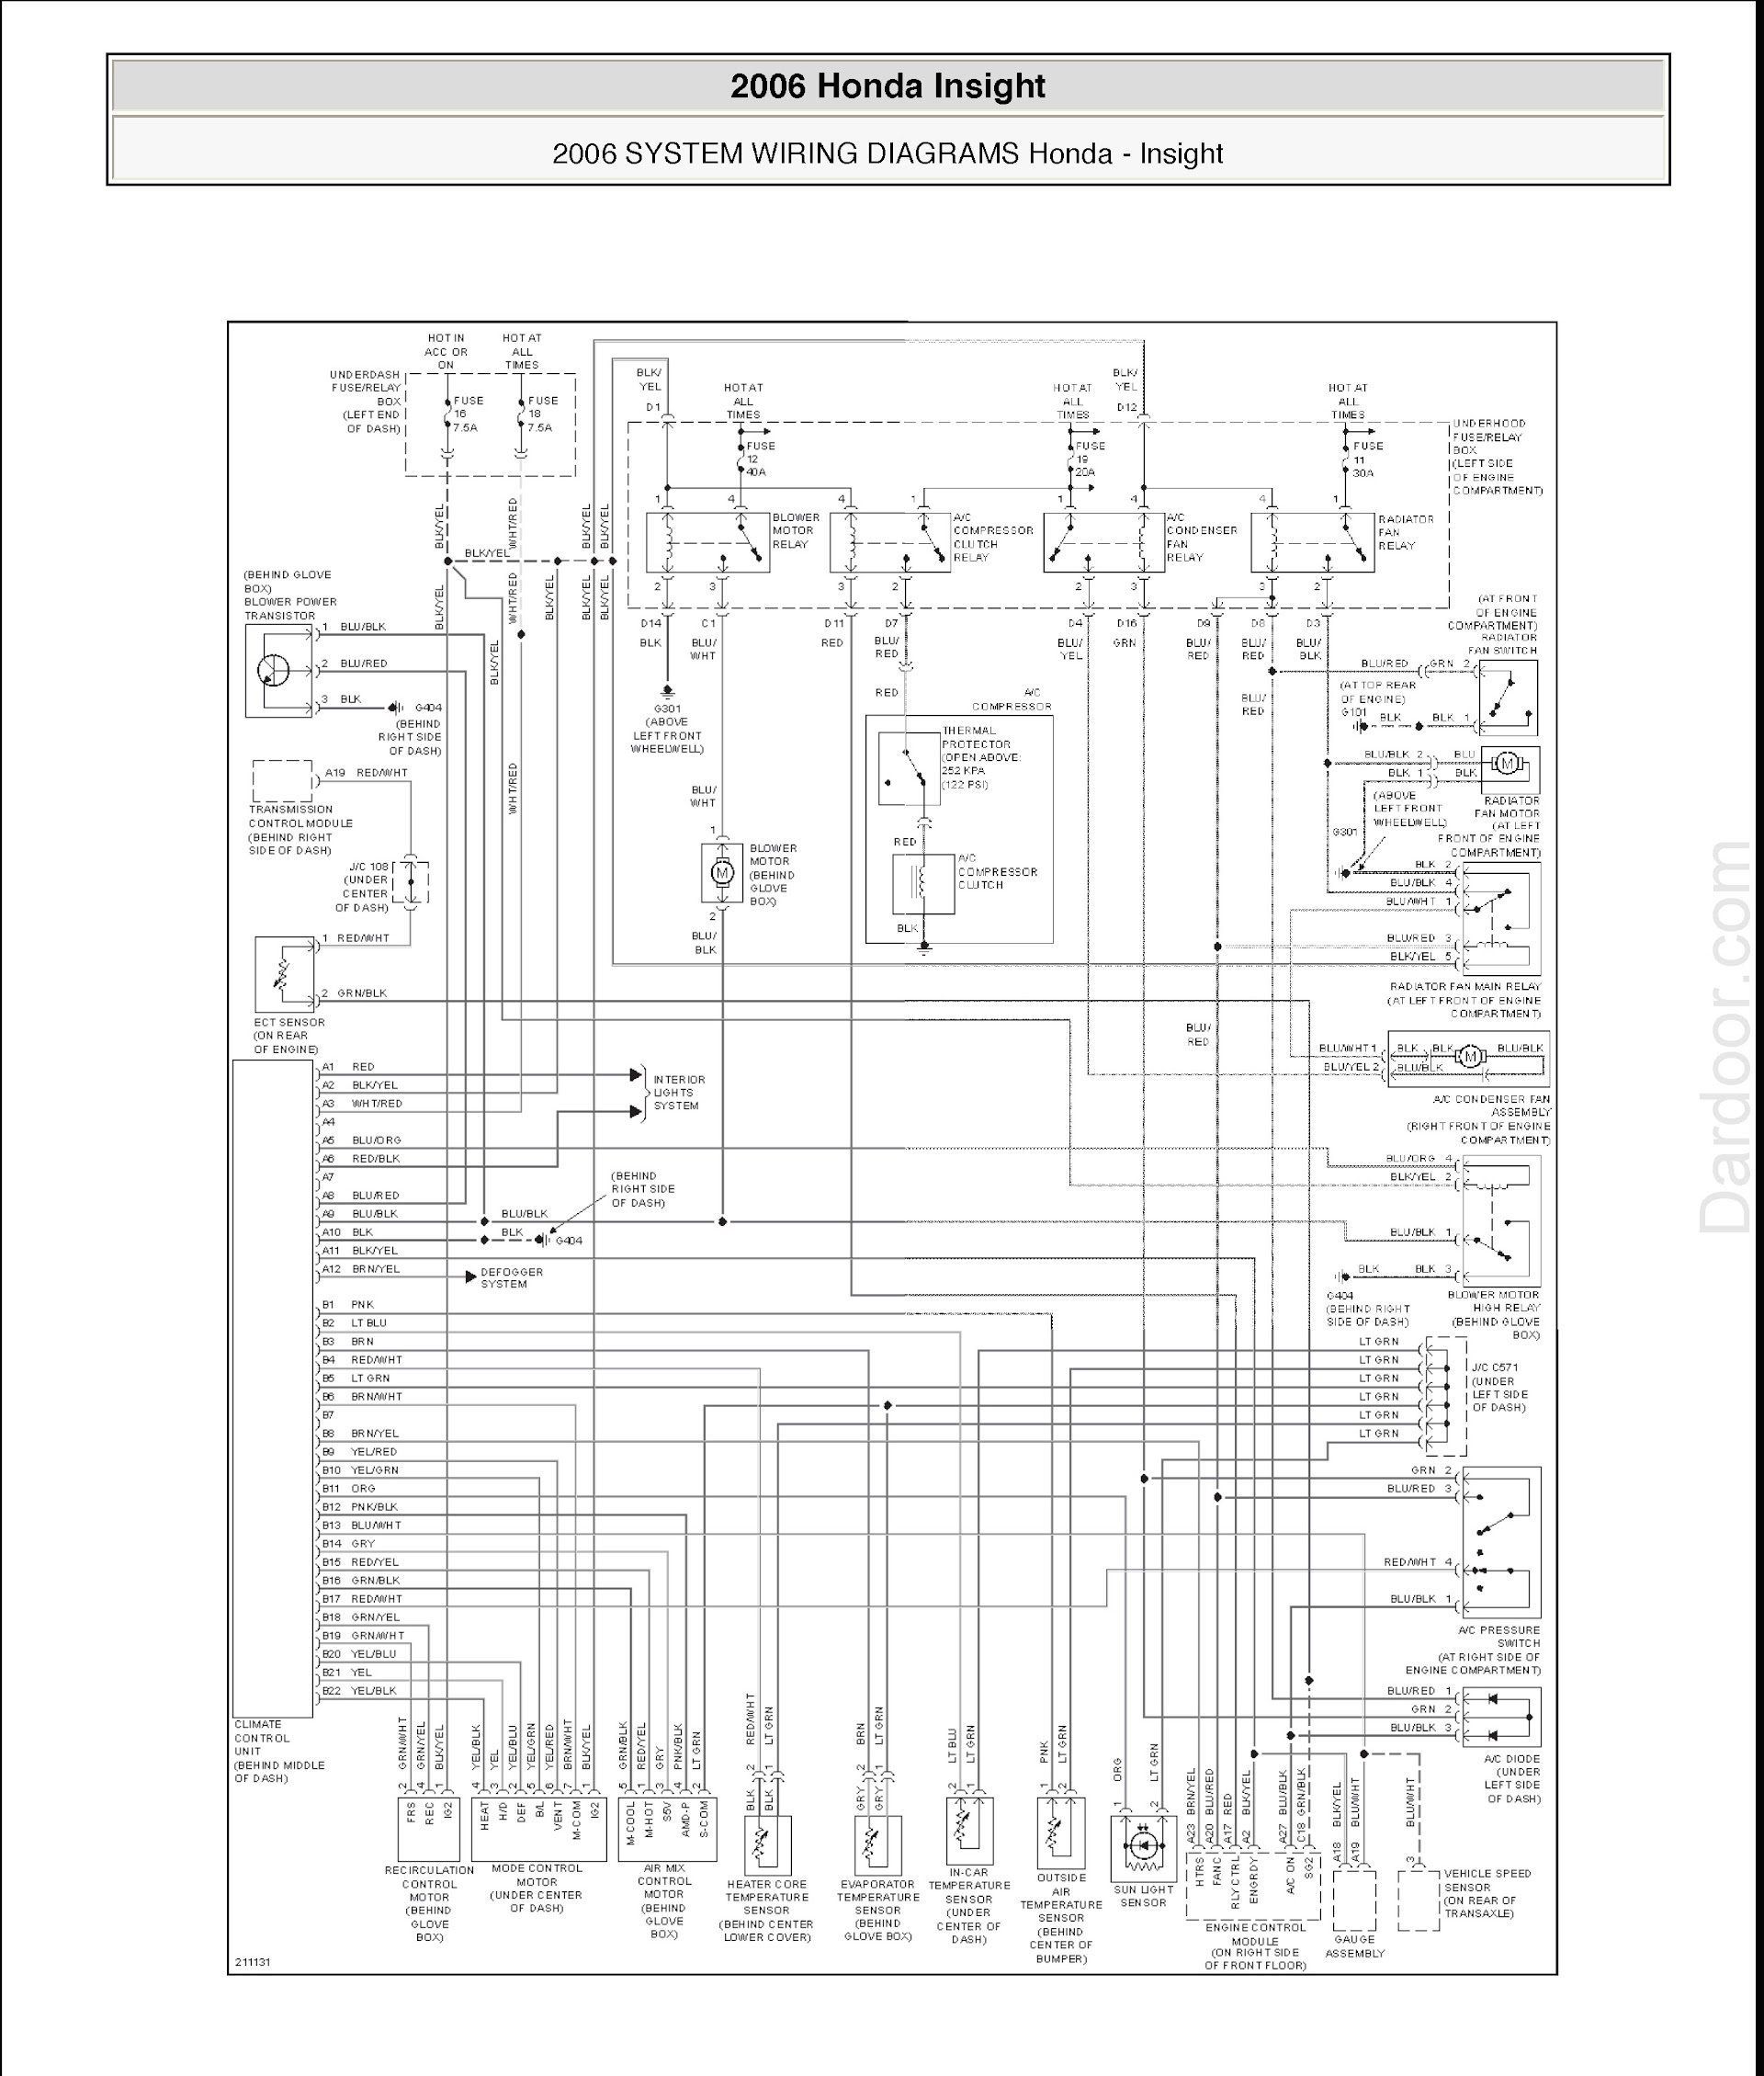 Download 2000-2006 Honda Insight Repair Manual